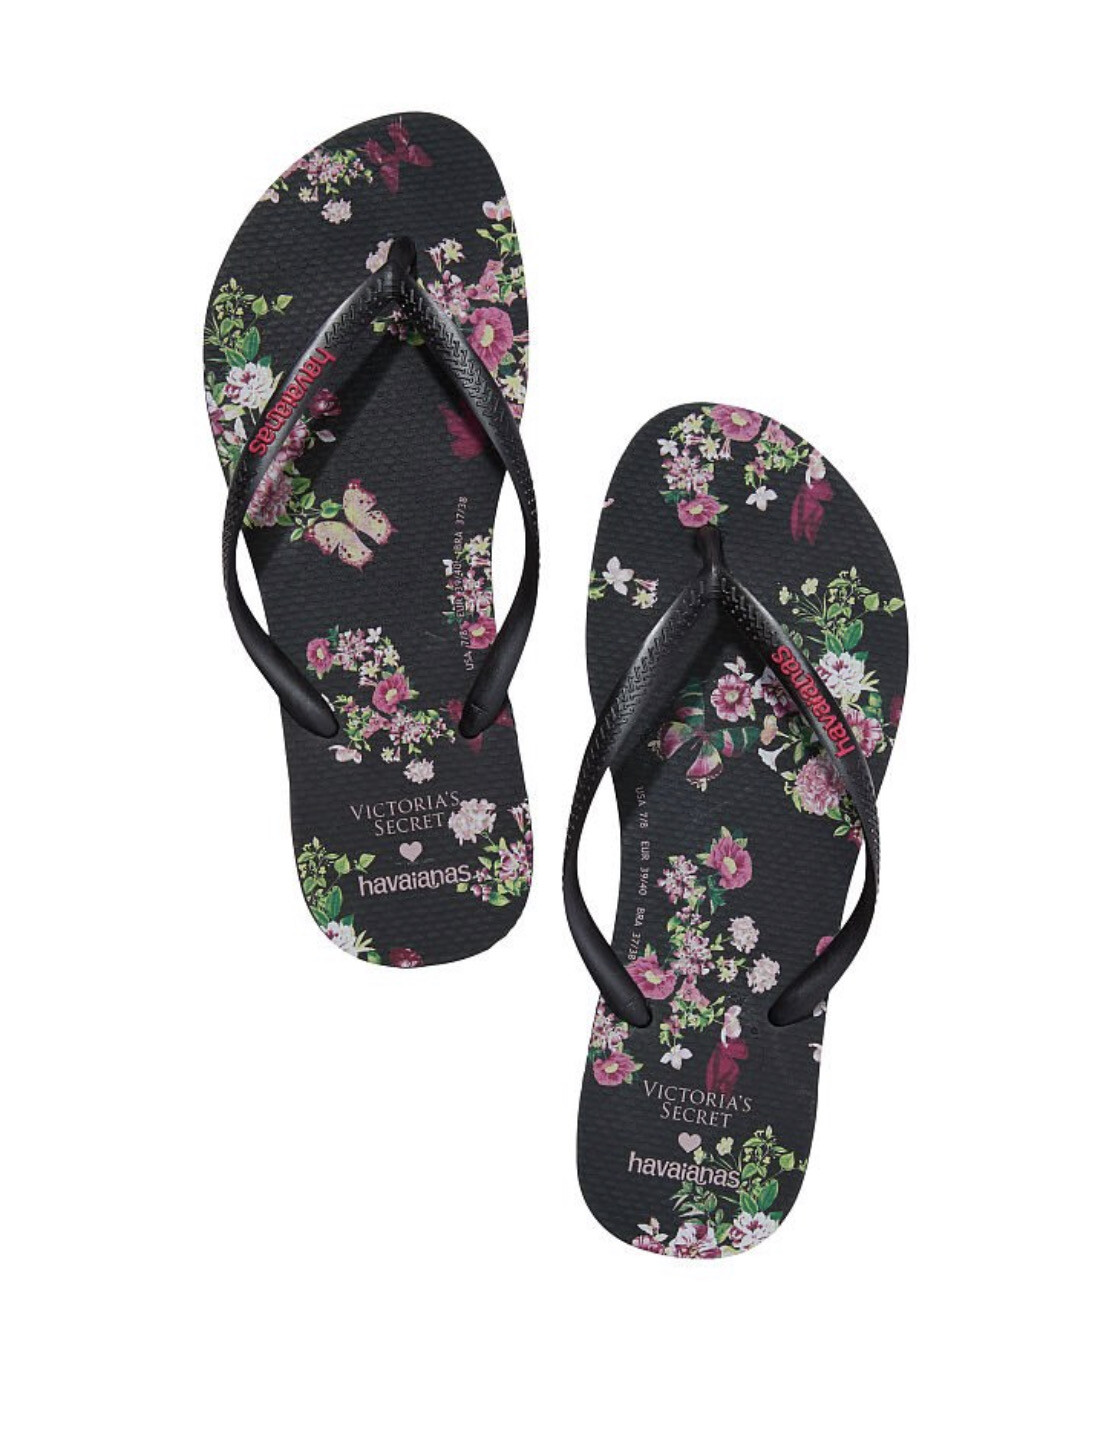 Havaianas x Victoria's Secret Slim Flip-Flop | Floral - Size 9/10